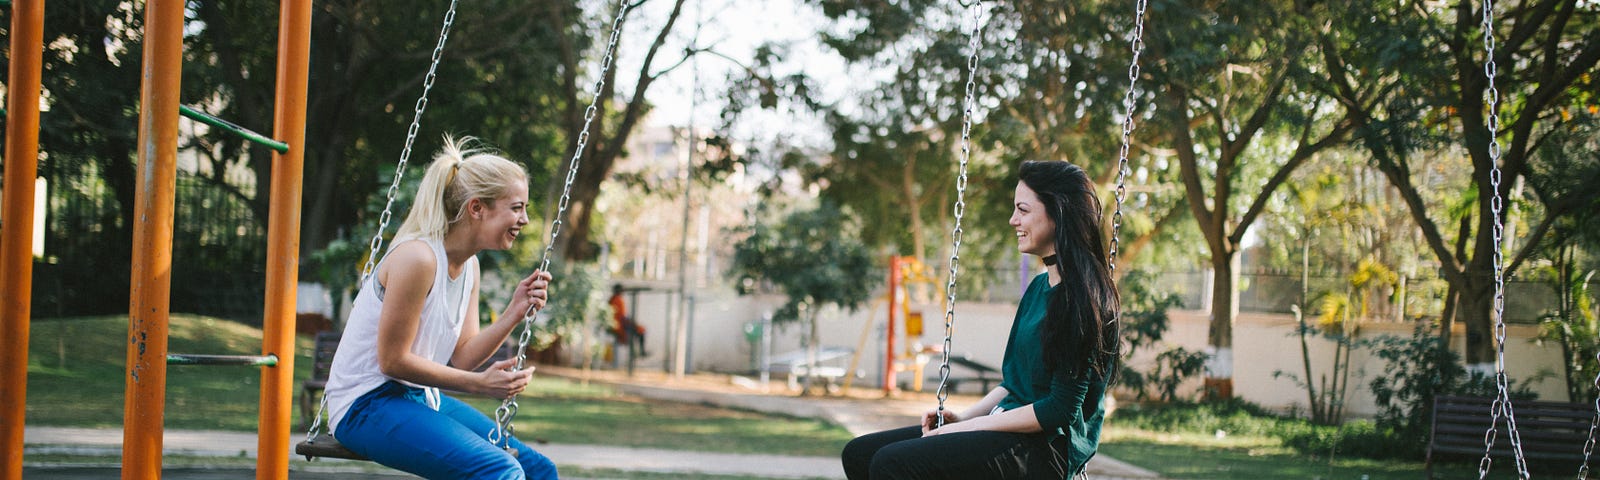 Two women sitting on swings having a conversation